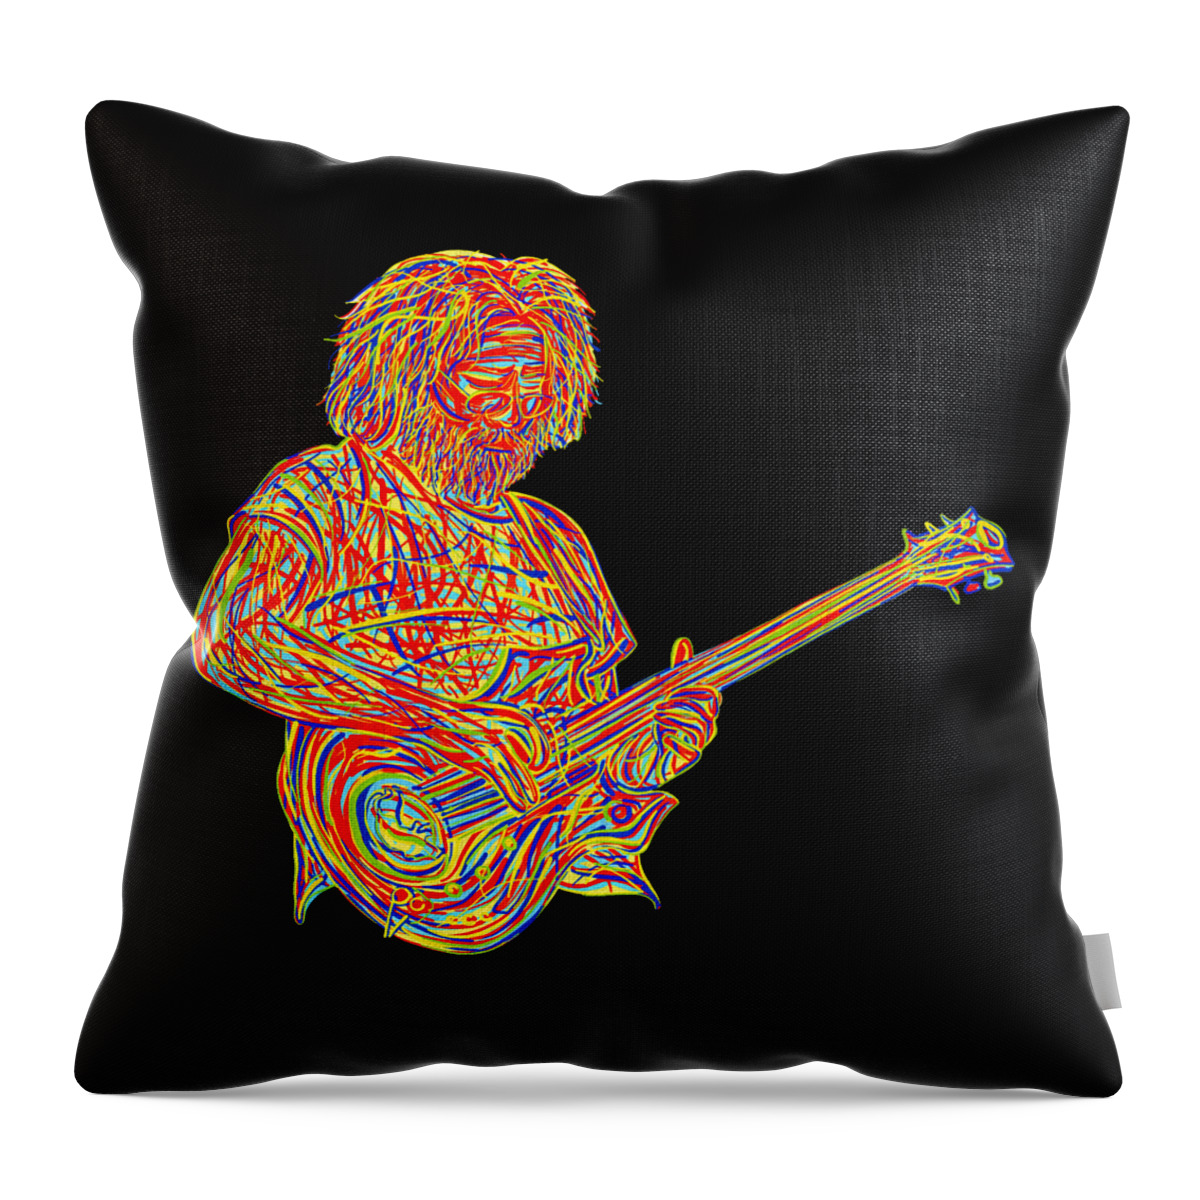 Grateful Dead Throw Pillow featuring the digital art Grateful Dead #1 by Steven D Moon